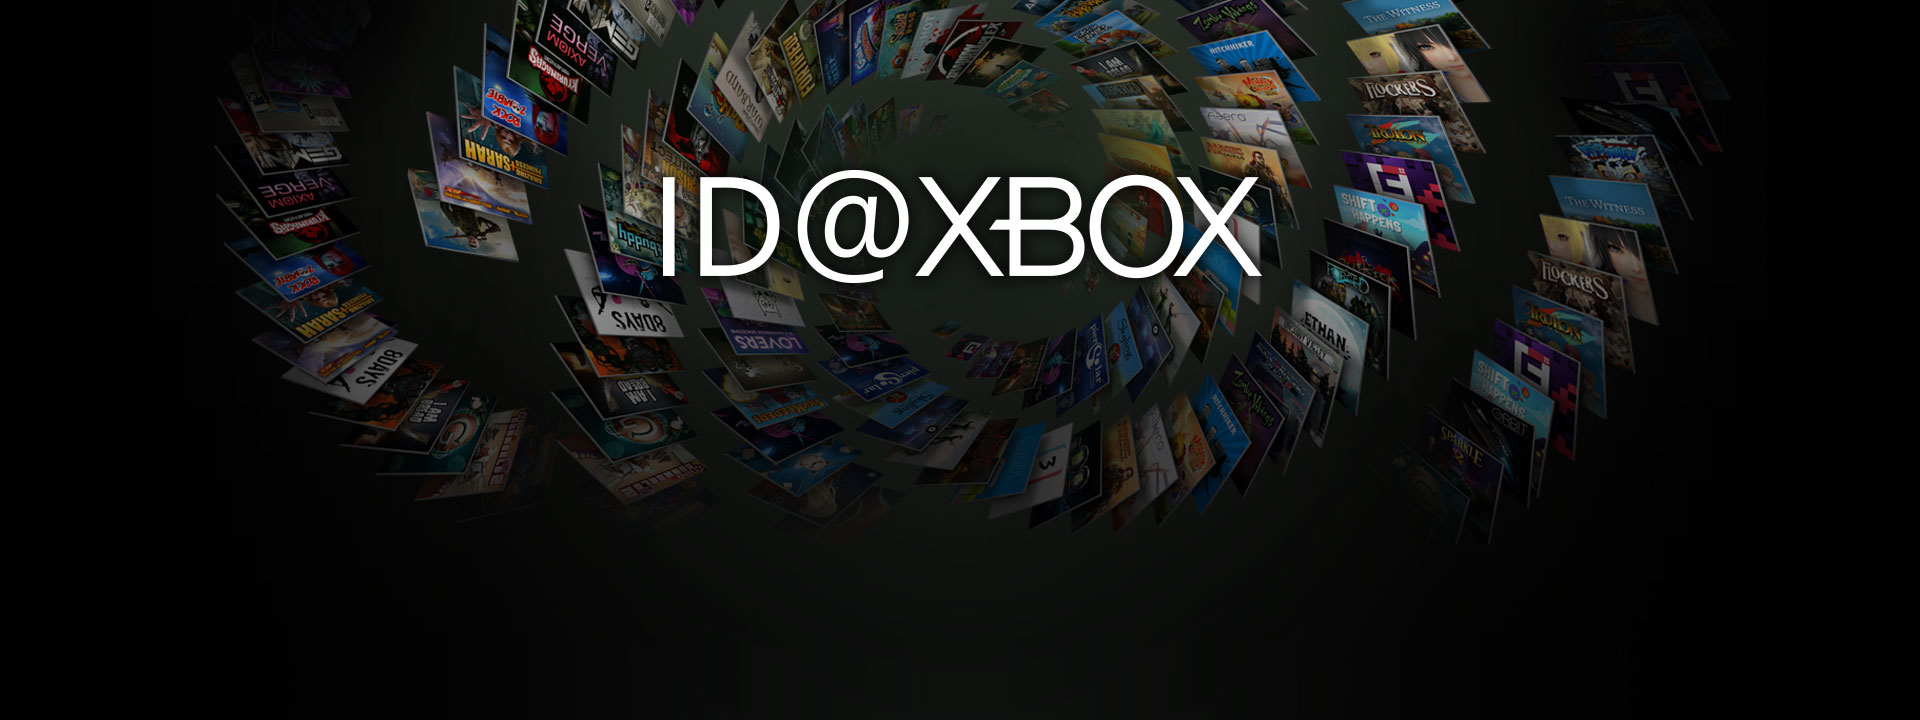 ID på Xbox-logo foran en samling av coverbilder fra ID-spill